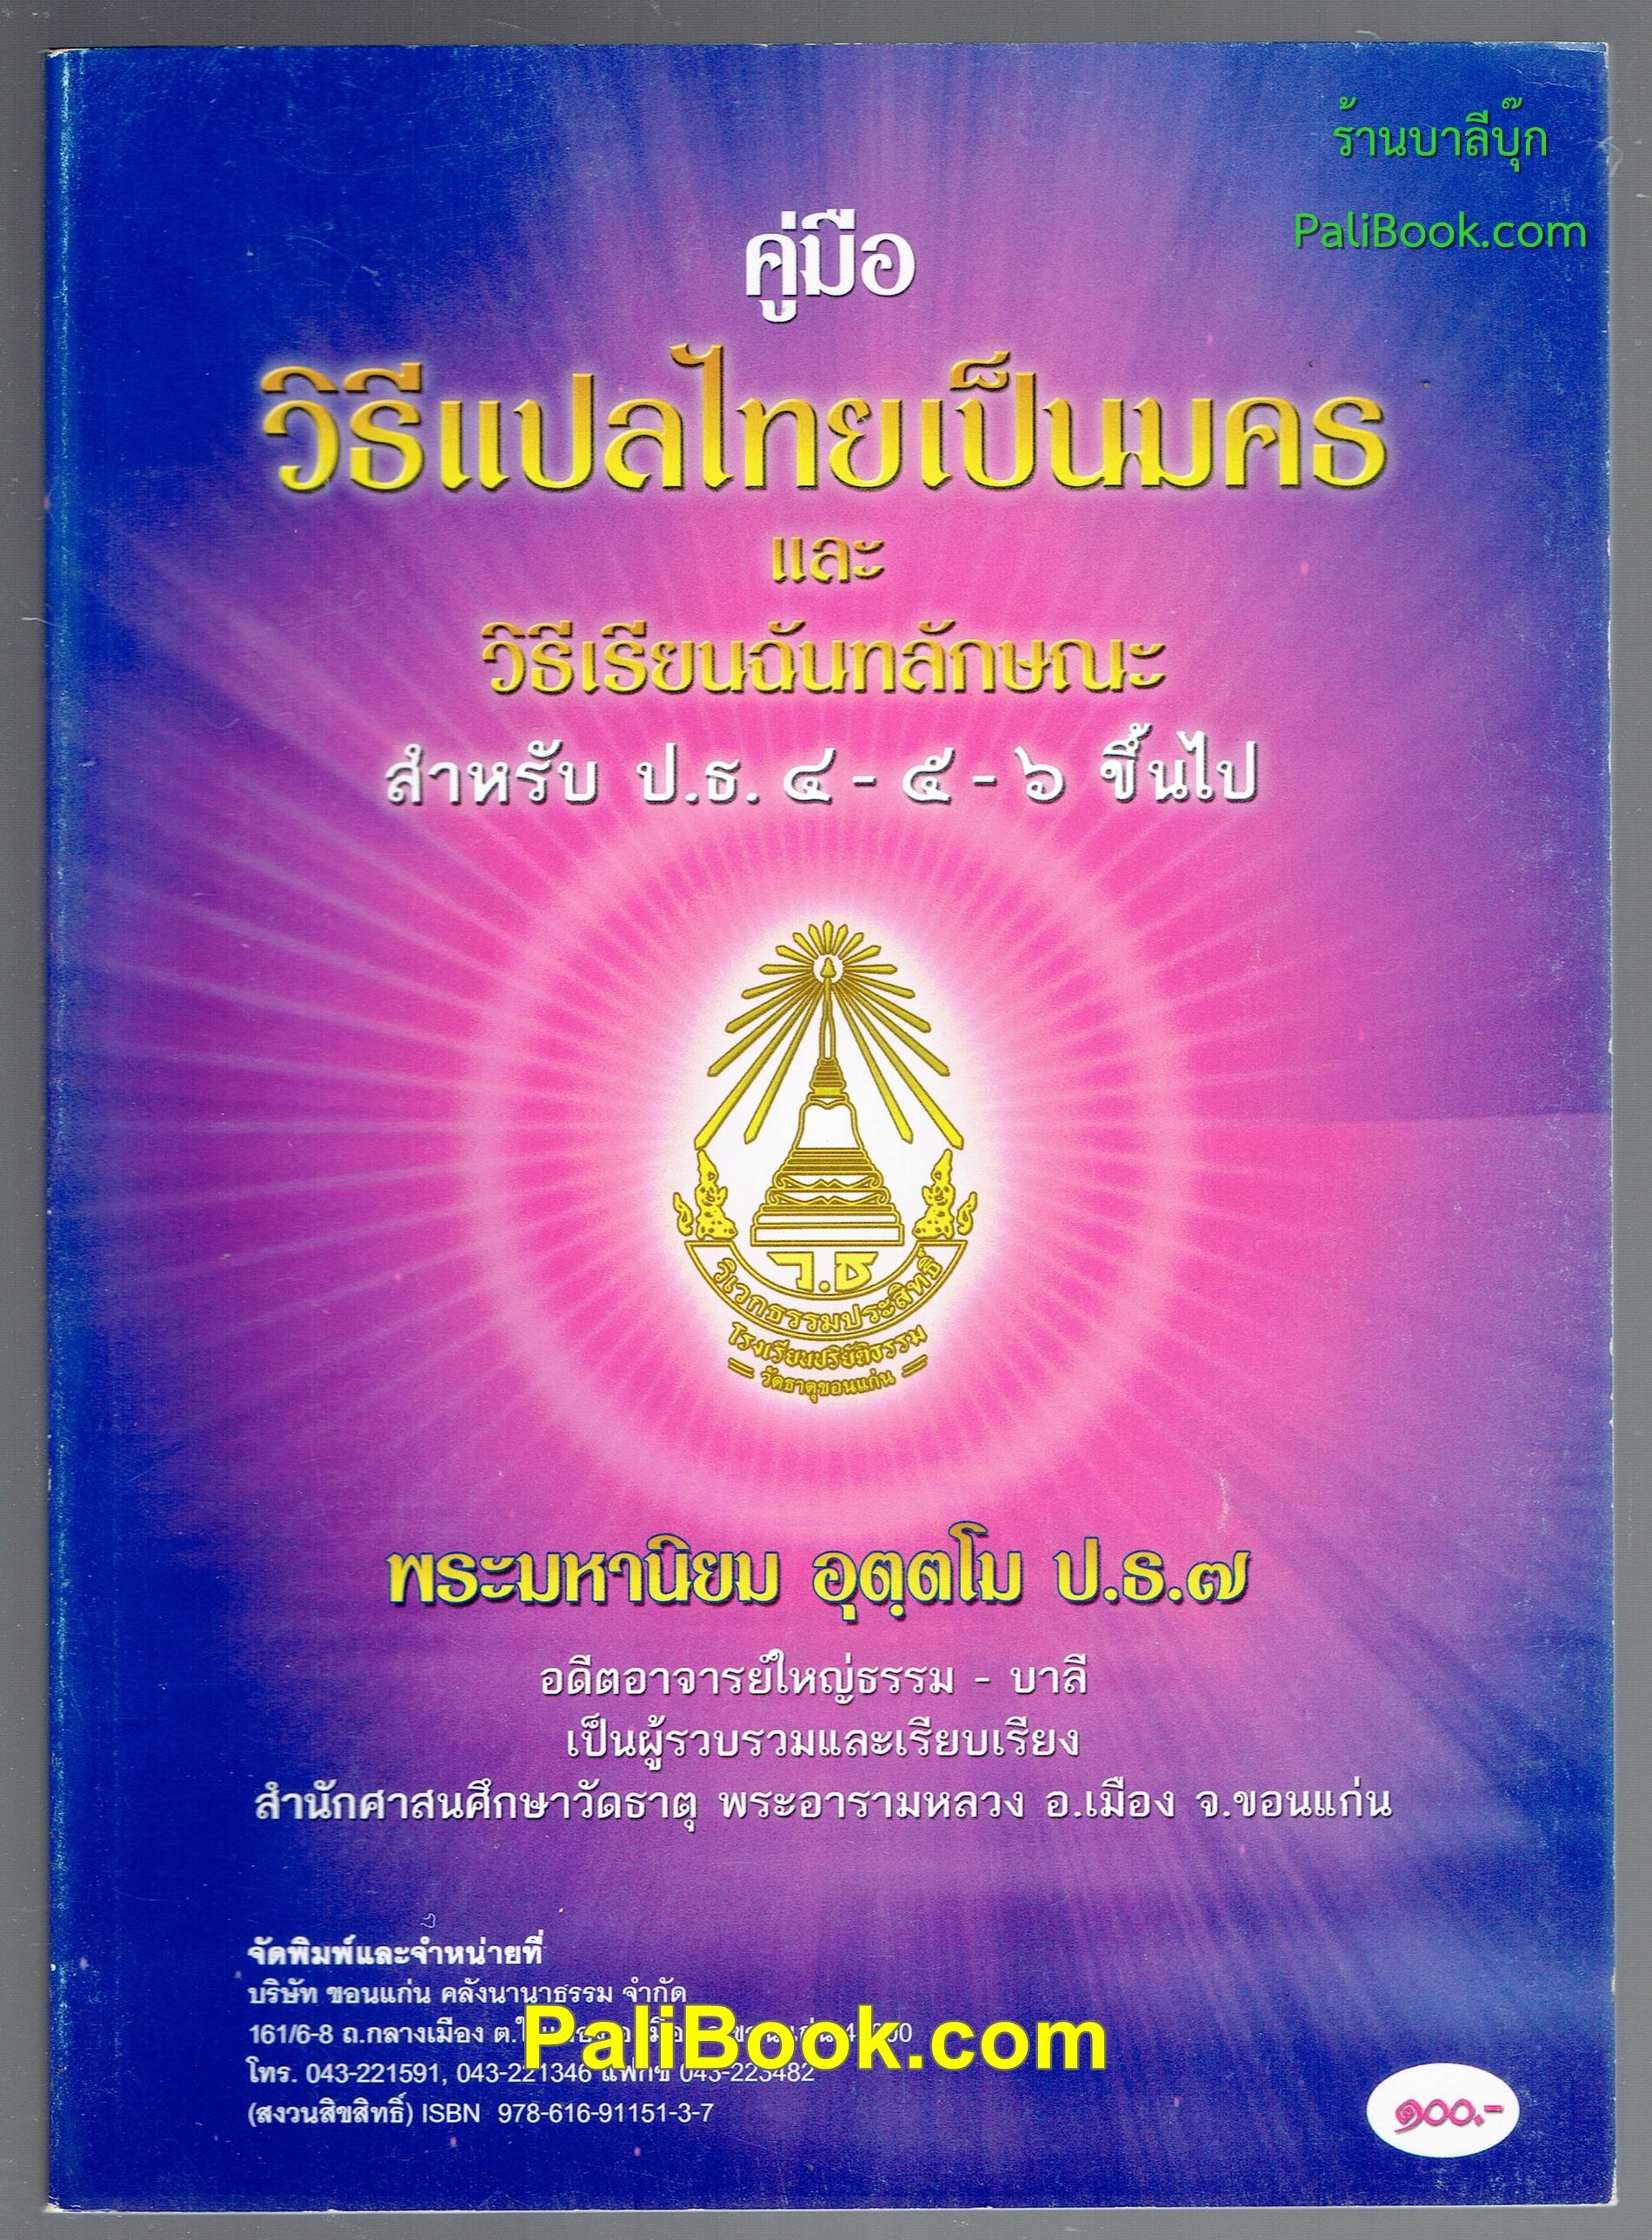 คู่มือ วิธีแปลไทยเป็นมคธ และ วิธีเรียนฉันทลักษณะ สำหรับ ป.ธ.4-5-6 ขึ้นไป - พระมหานิยม อุตฺตโม - หนังสือบาลี ร้านบาลีบุ๊ก Palibook